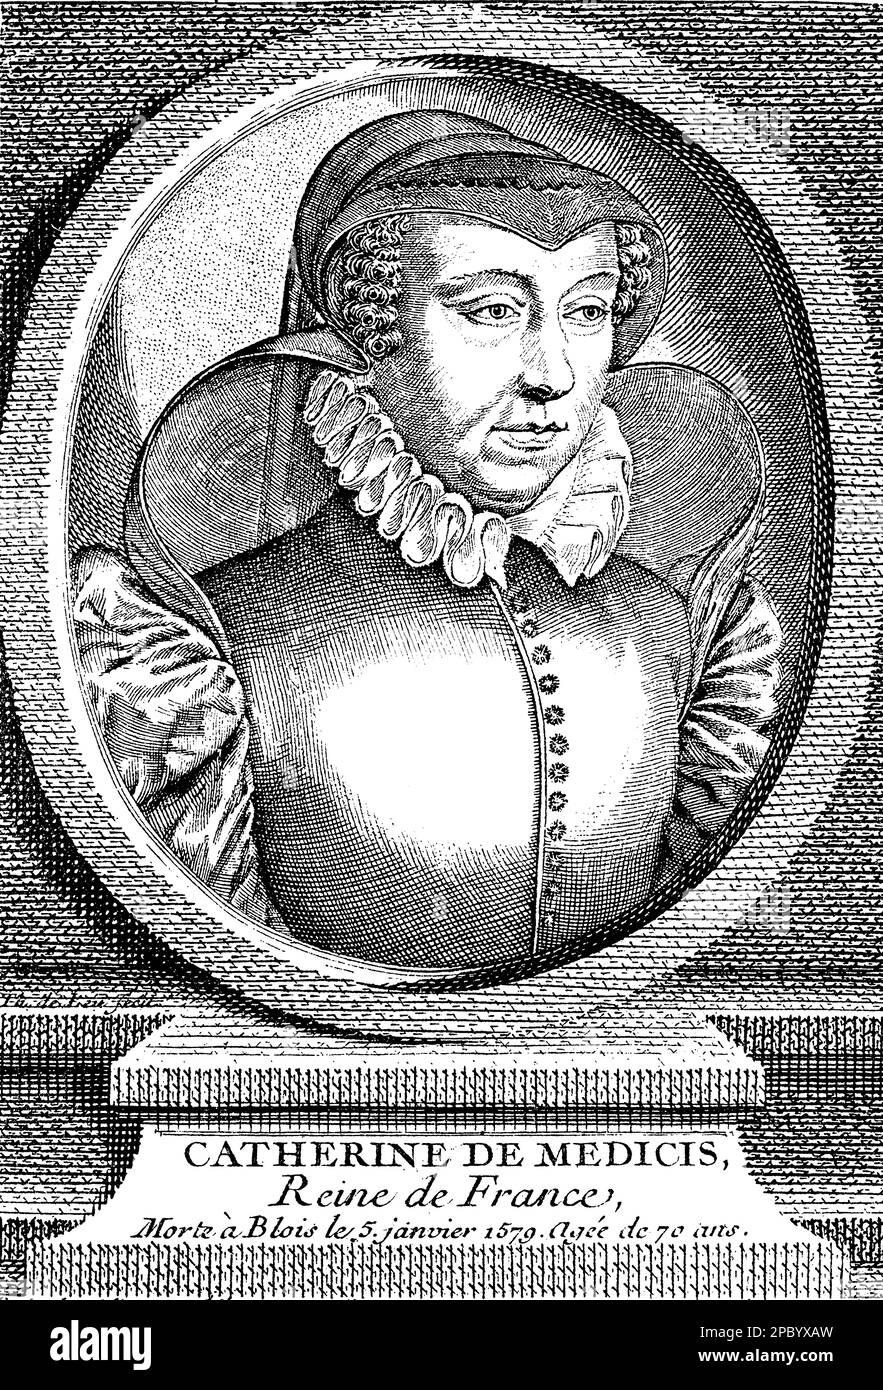 Caterina de' Medici fu una potente regina consorte e reggente di Francia durante il 16th ° secolo. Era nota per la sua influenza politica, il patrocinio delle arti e il ruolo controverso nelle guerre di religione francesi. Era anche conosciuta per il suo interesse in astrologia e il suo famigerato 'Gabinetto degli Orrori. Foto Stock